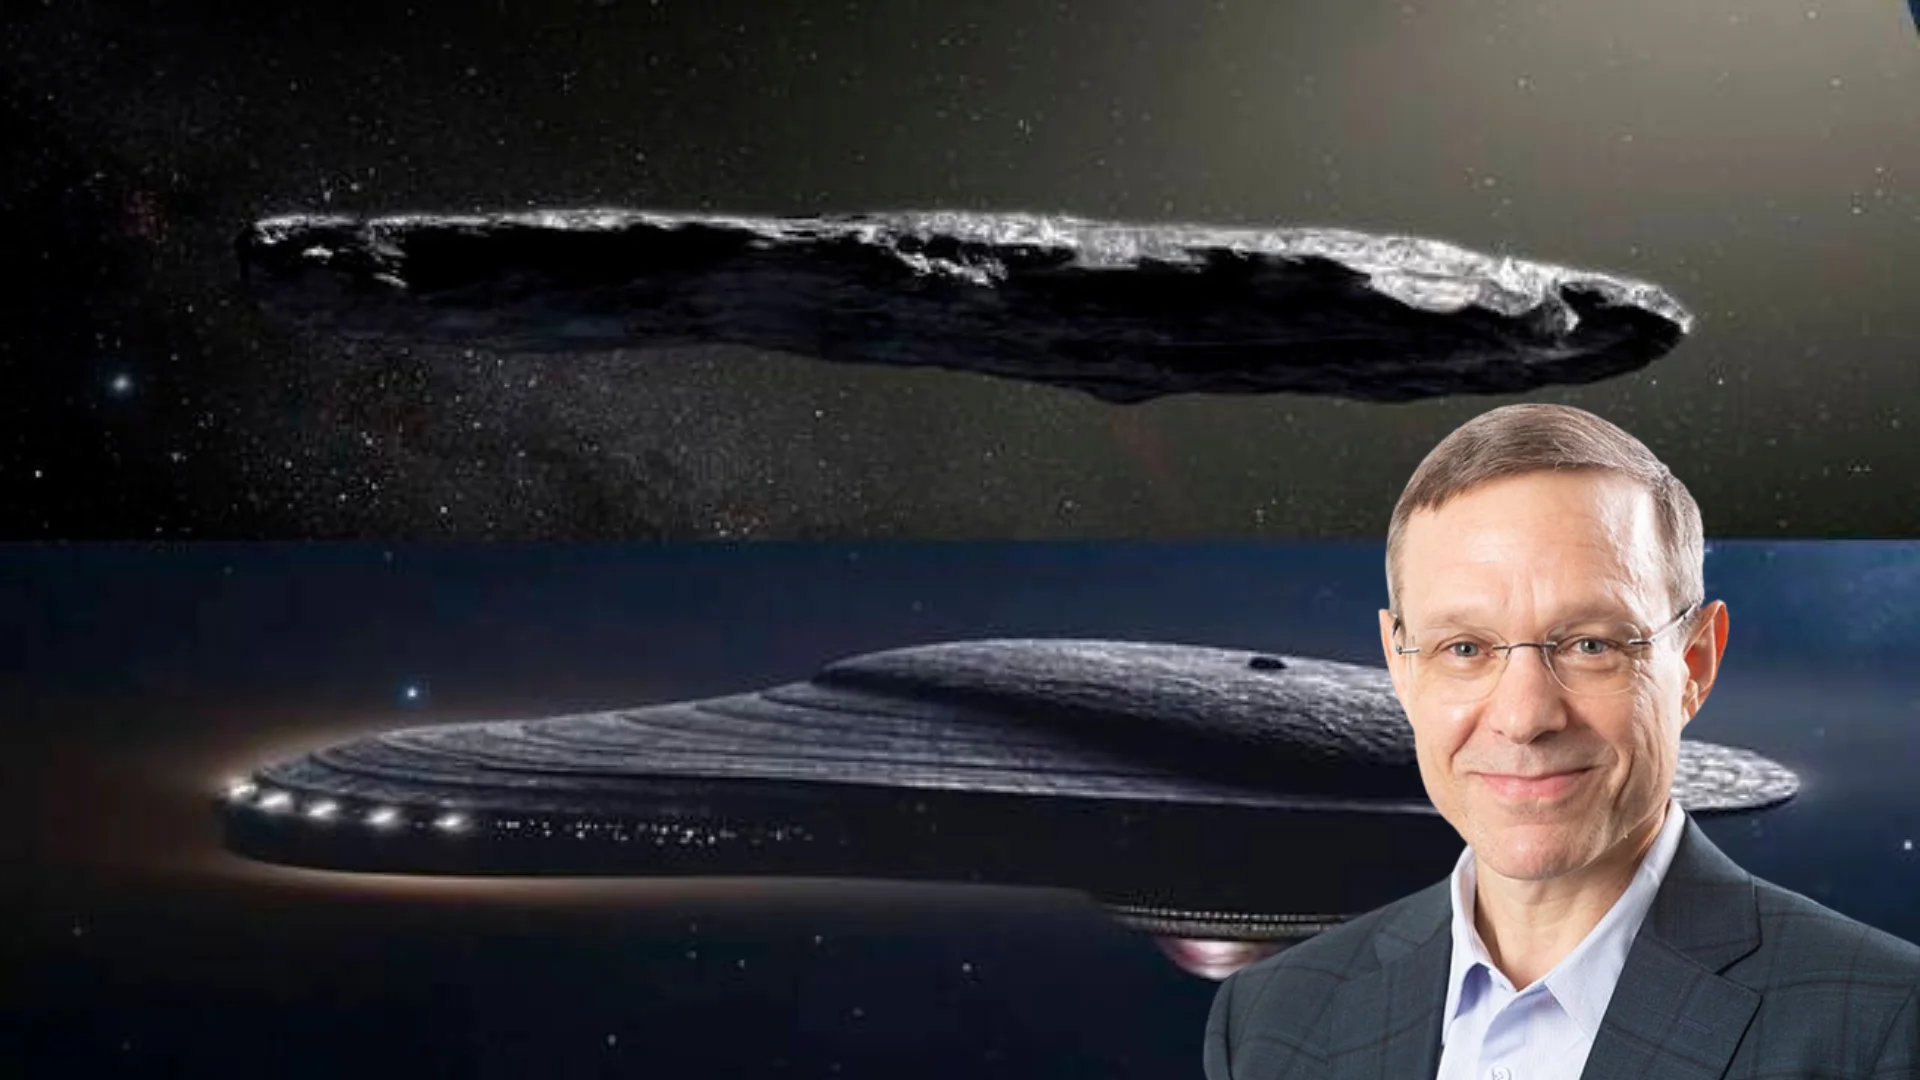 Oumuamua no es un asteroide, sino restos alienígenas